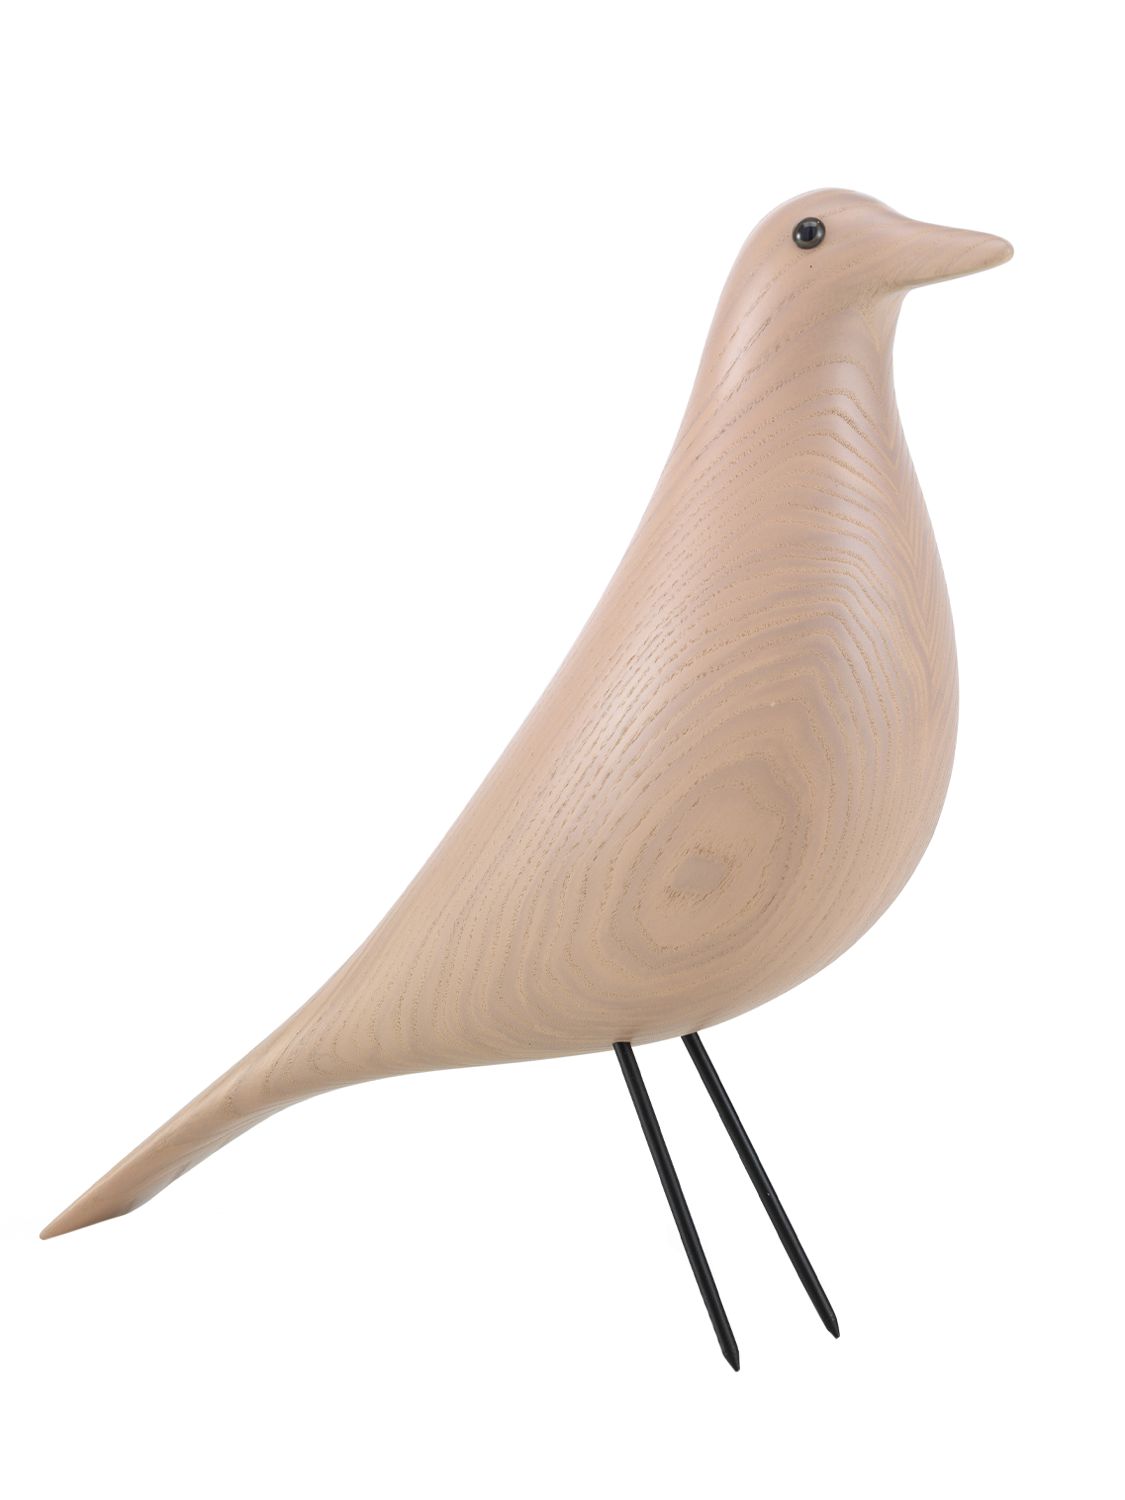 Special Collection Eames House Bird - VITRA - Modalova